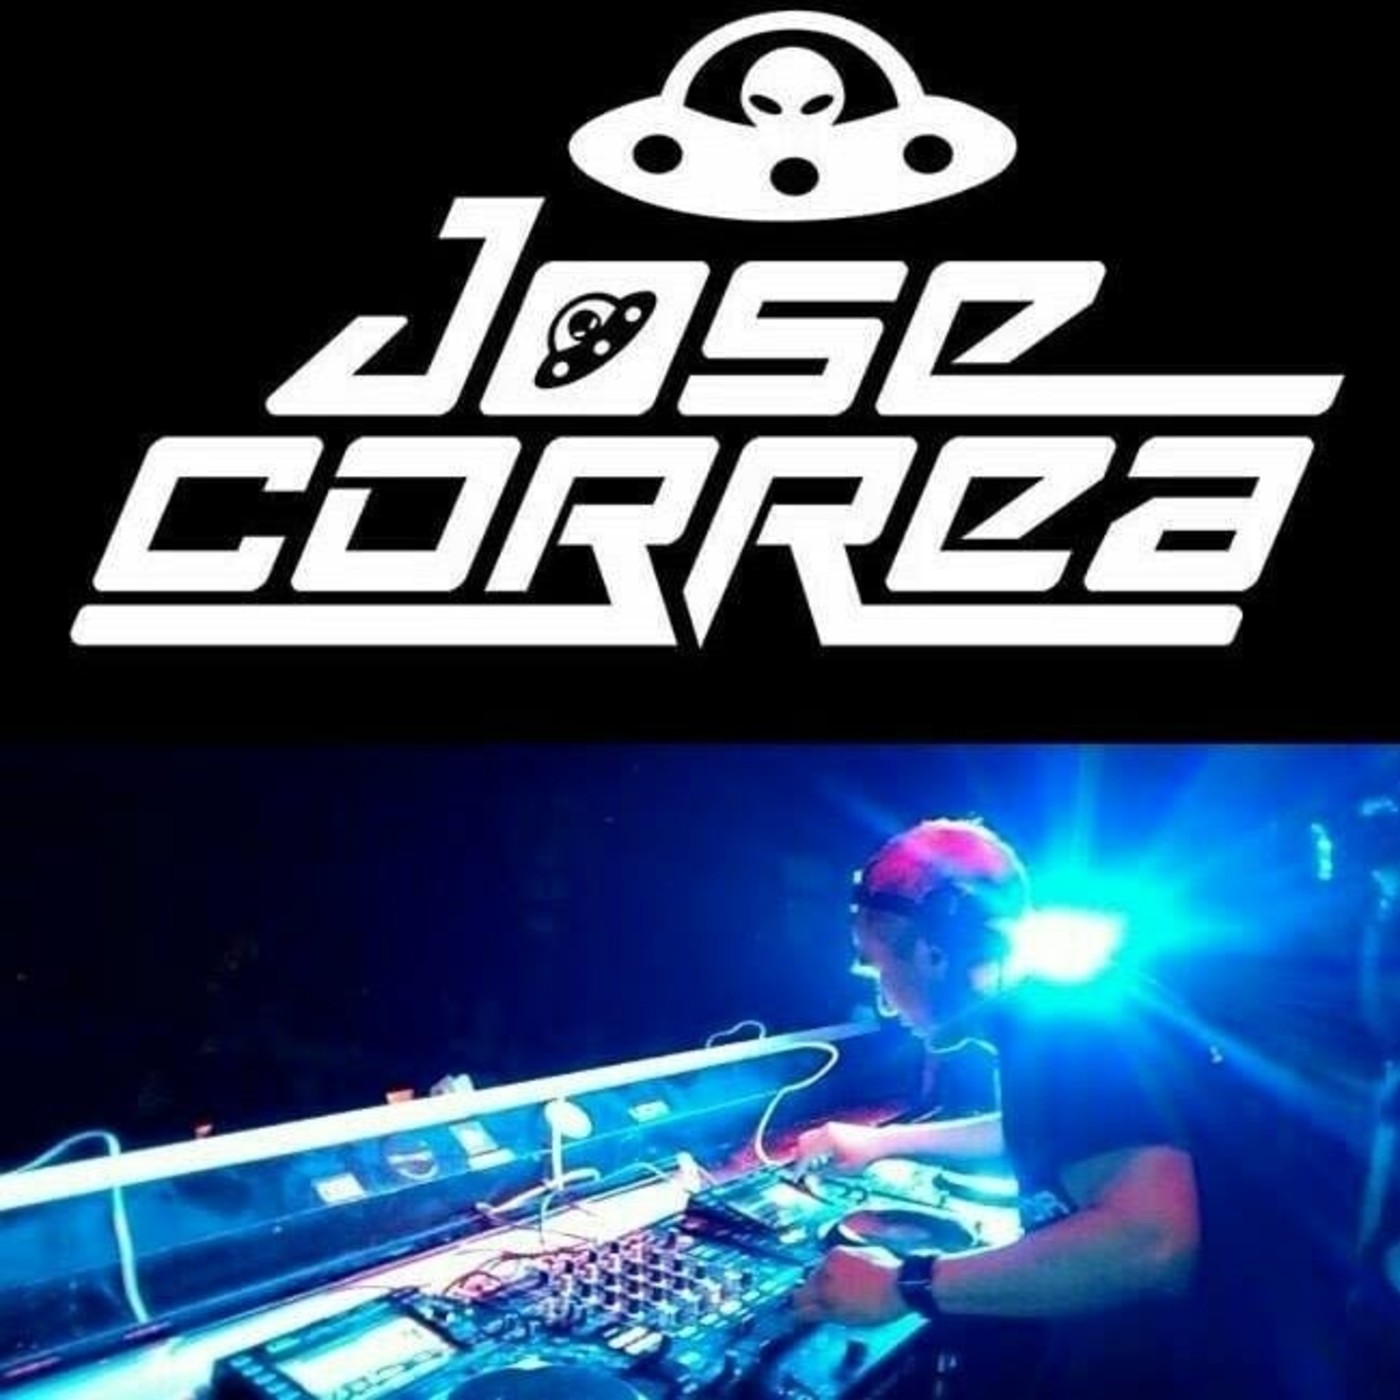 Jose Correa 